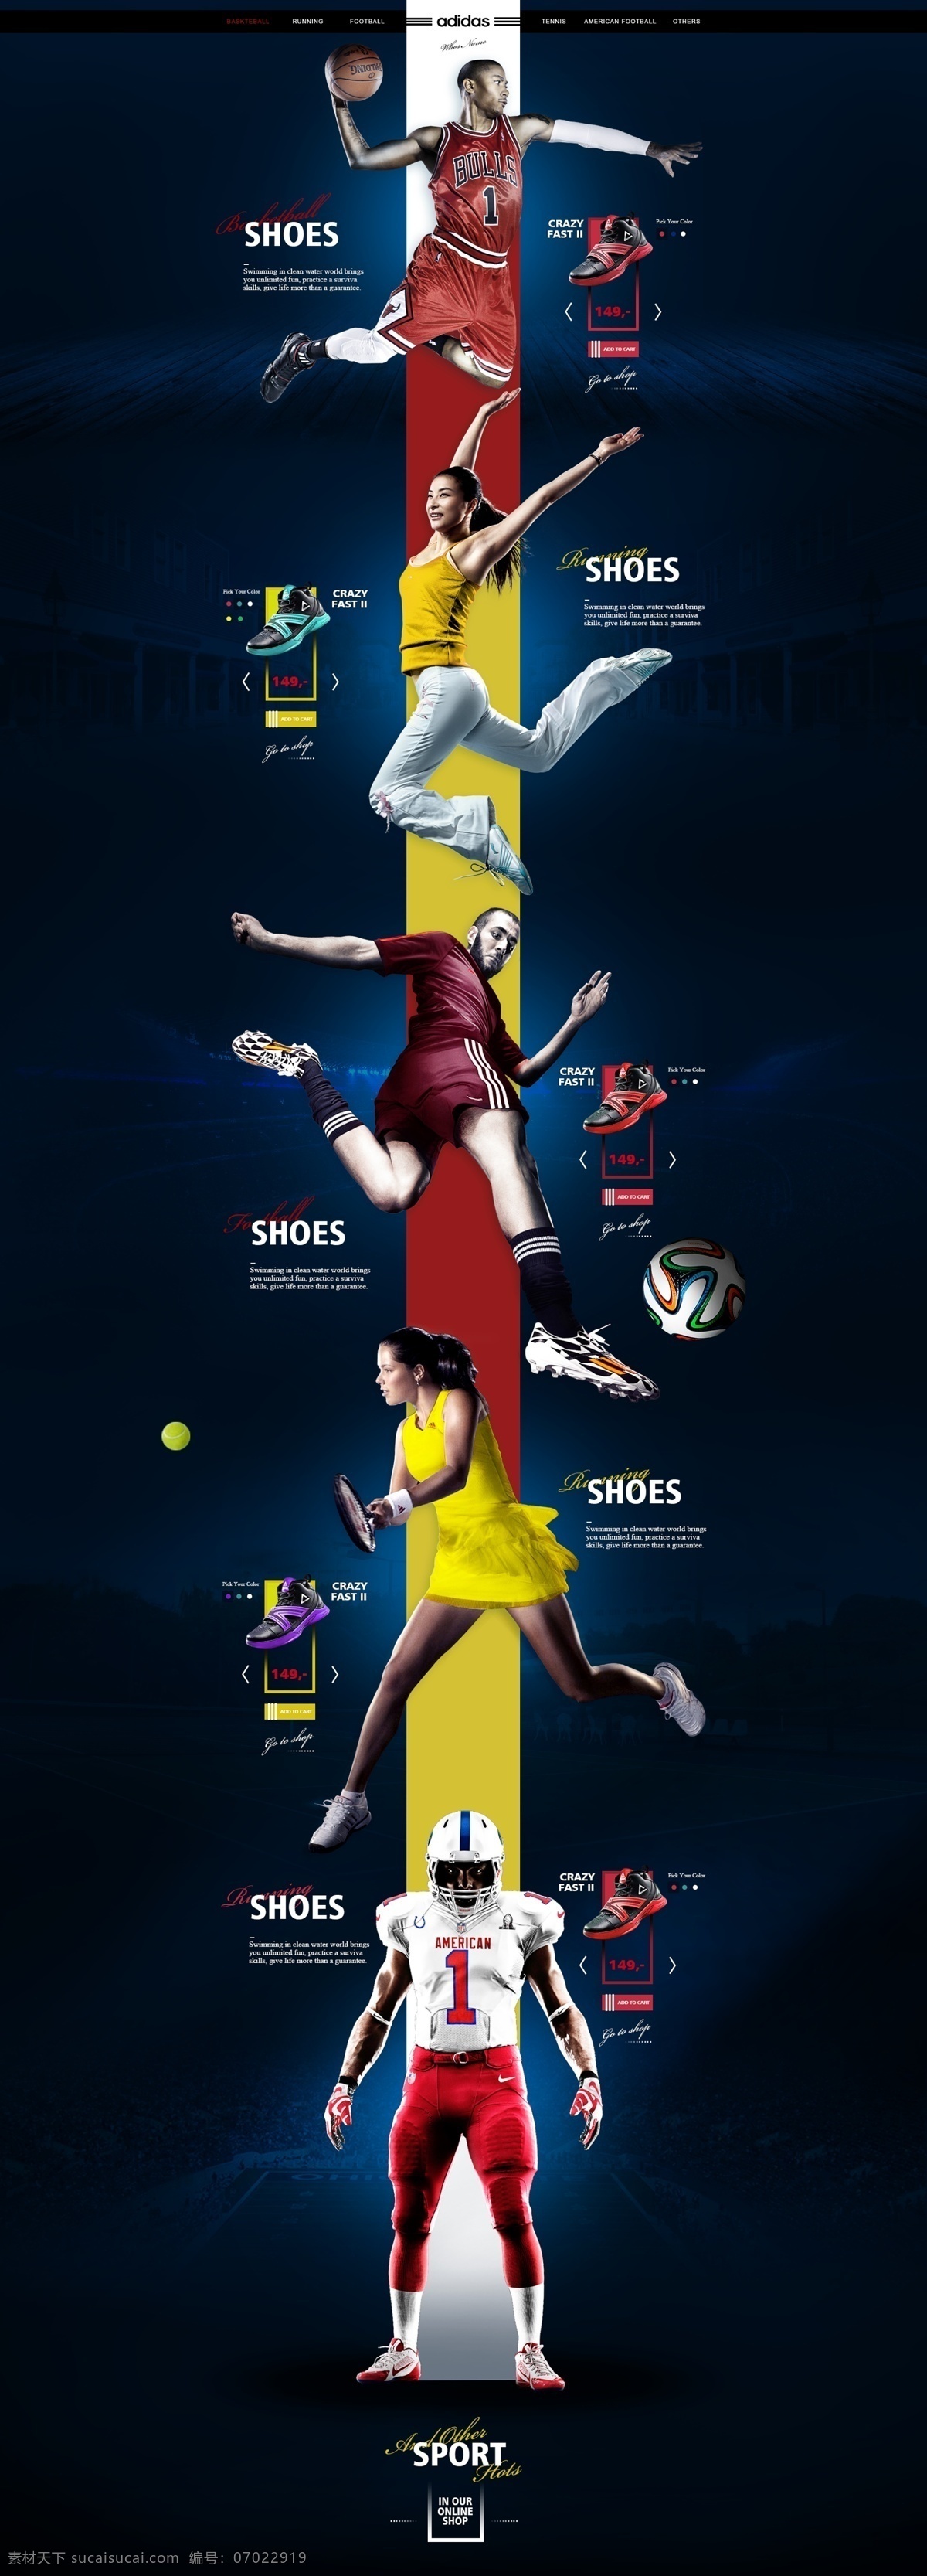 阿迪达斯 运动鞋 淘宝 网店 效果图 网站模板 网页效果图 运动产品 跑步鞋 淘宝运动鞋 体育运动 篮球运动员 橄榄球员 网球 分层